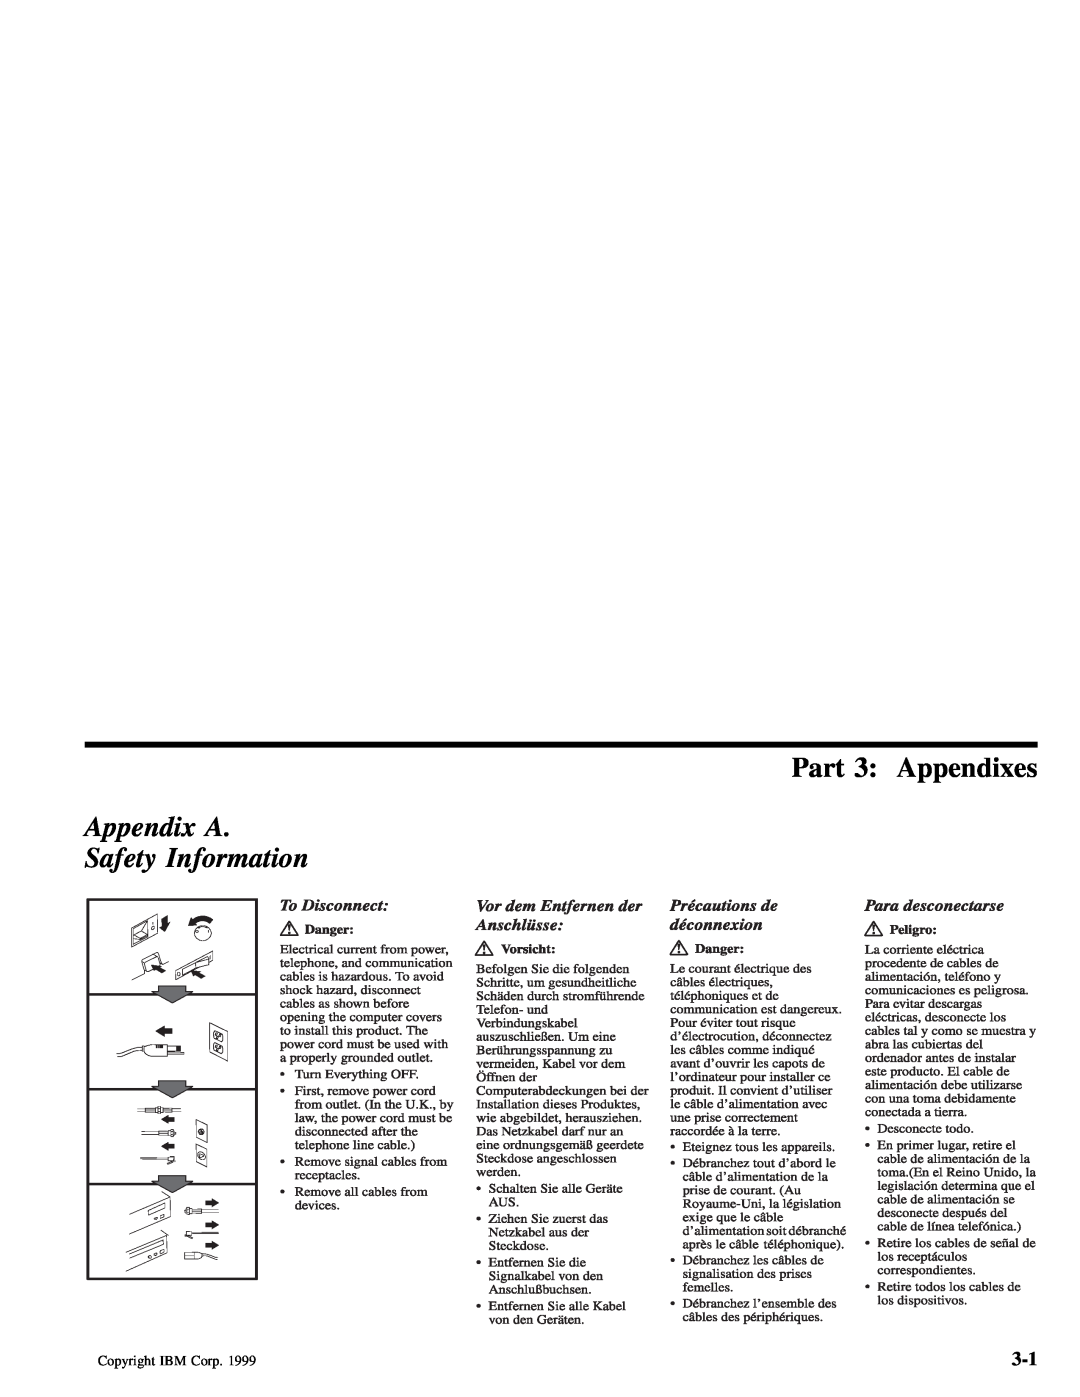 IBM 28L2234 manual Part 3 Appendixes, Appendix A Safety Information 